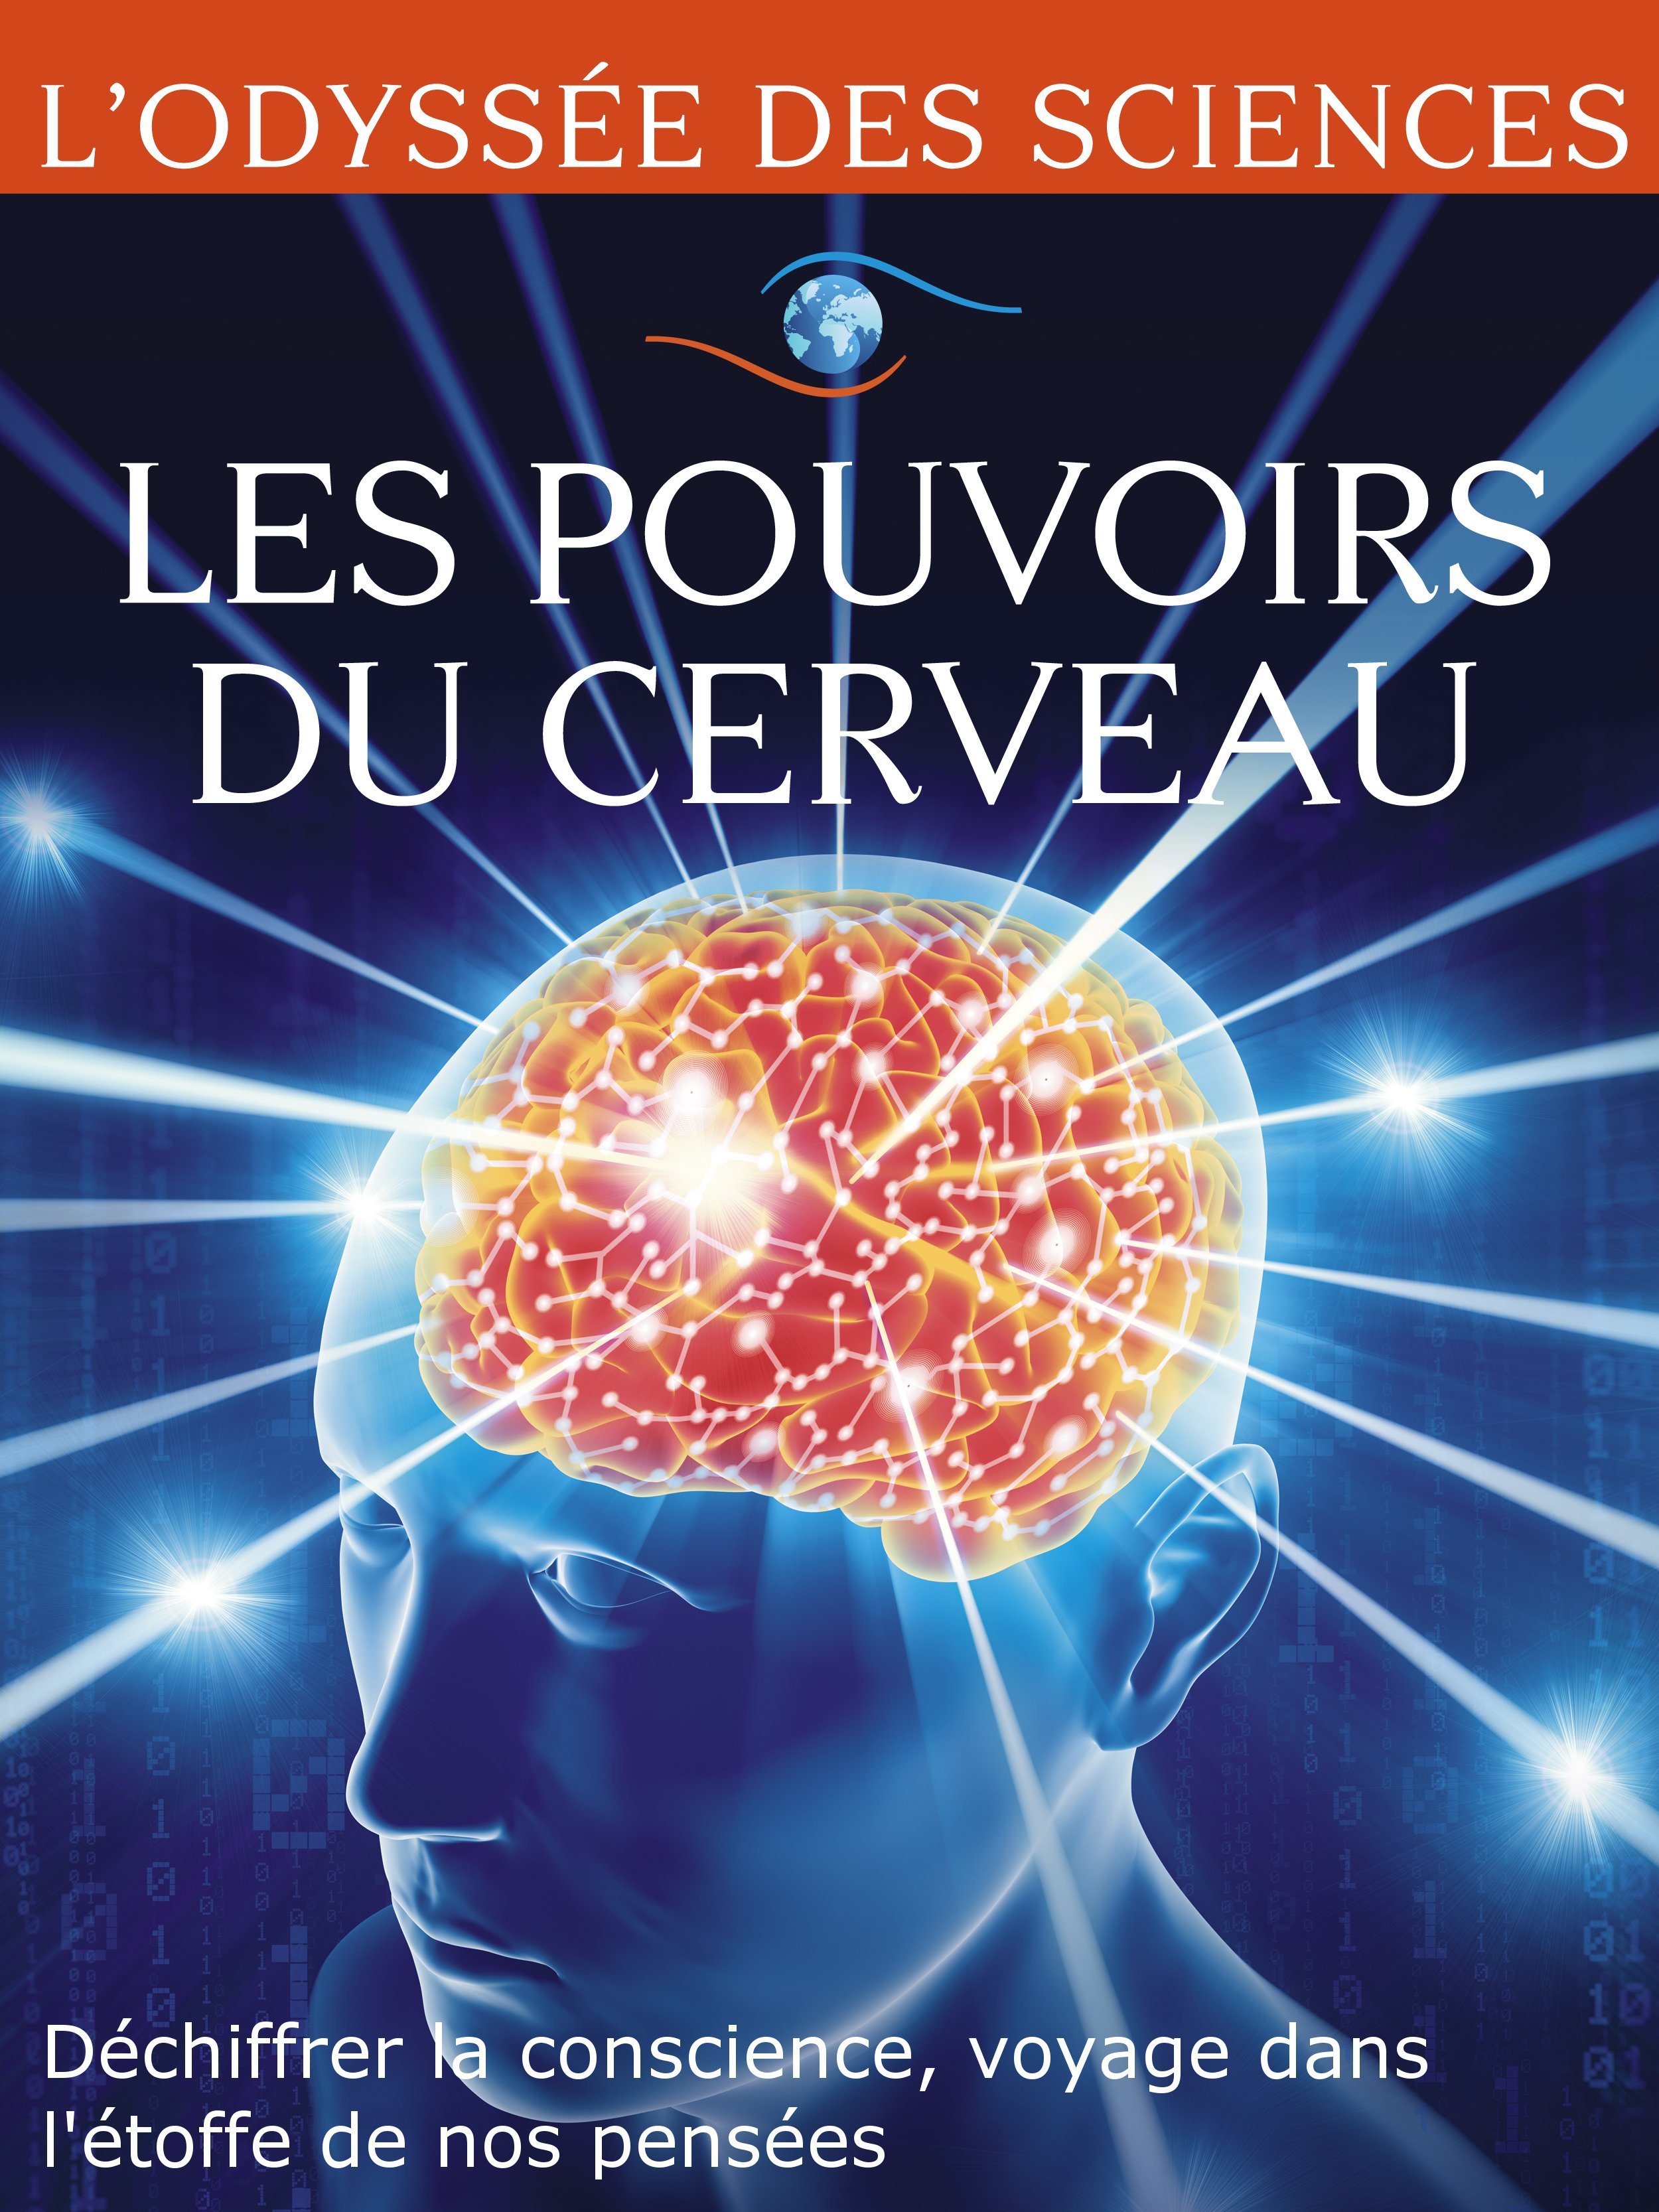 Movie poster of Les pouvoirs du cerveau - Déchiffrer la conscience, voyage dans l'étoffe de nos pensées